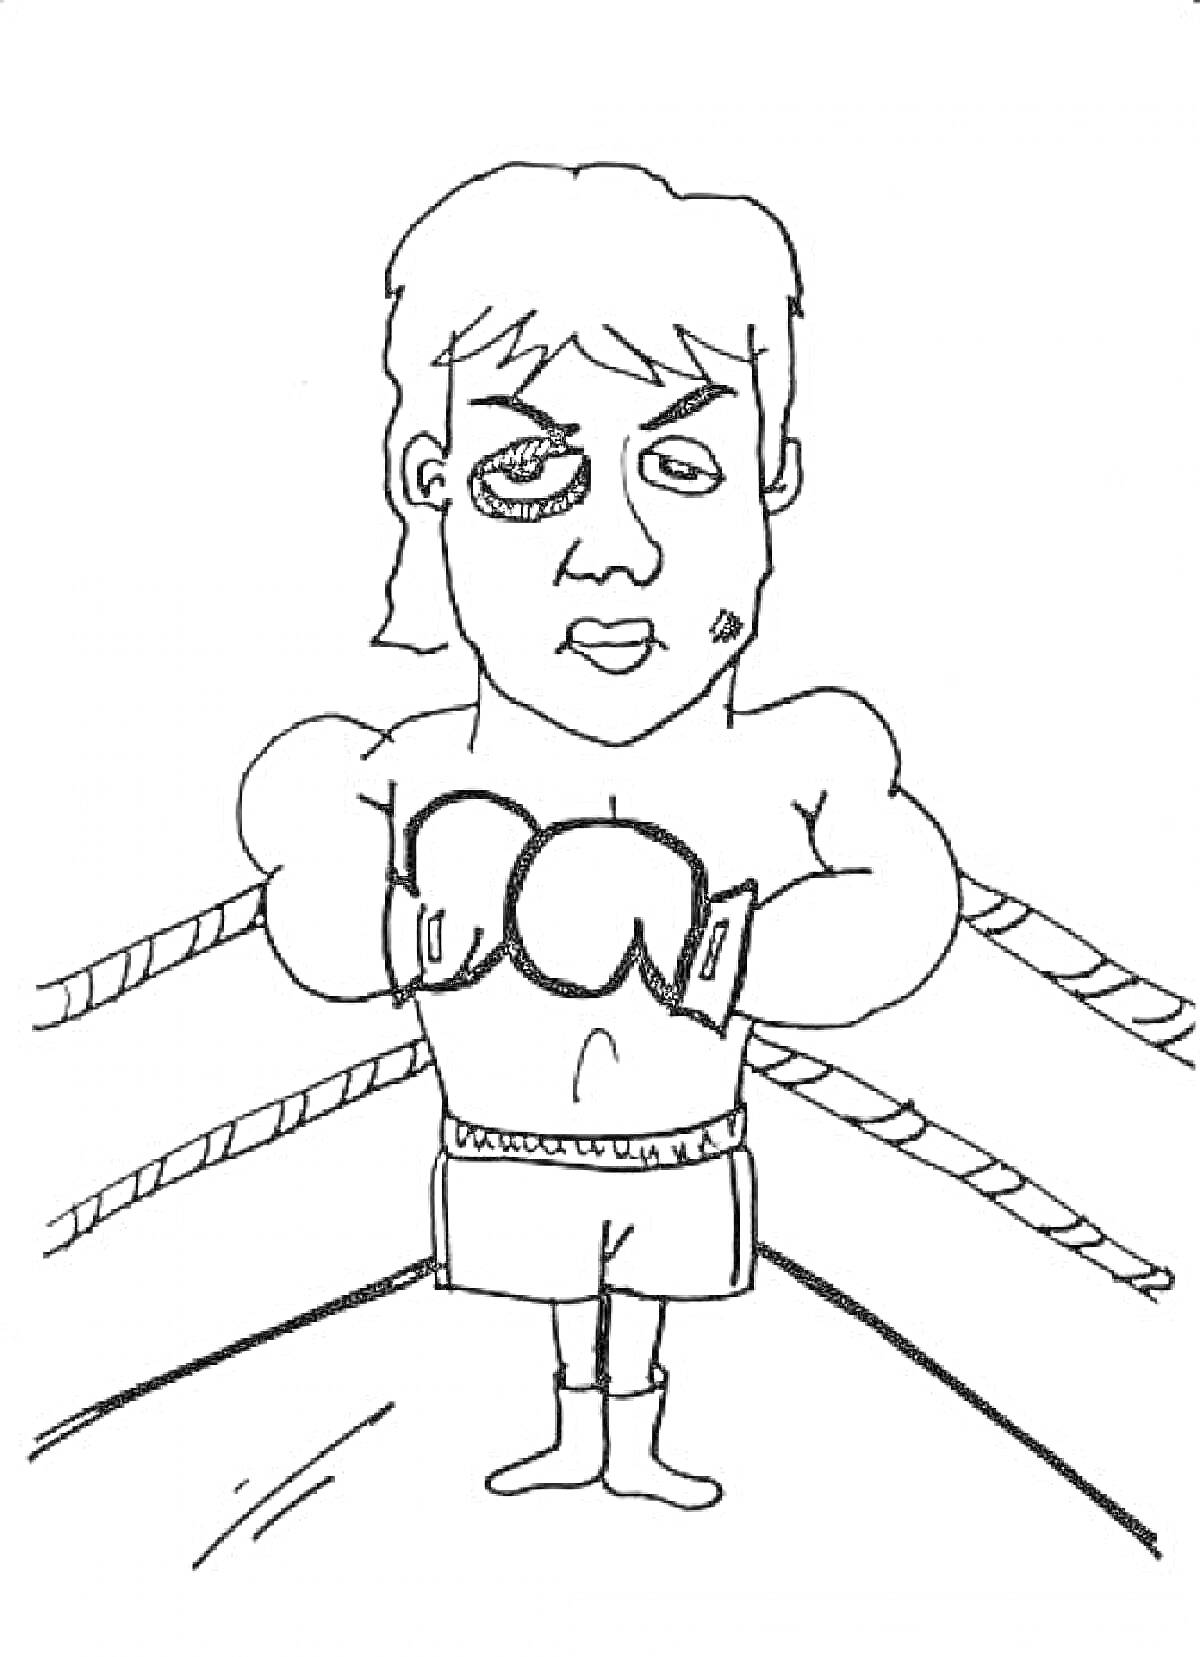 Боксер с синяком на лице в ринге